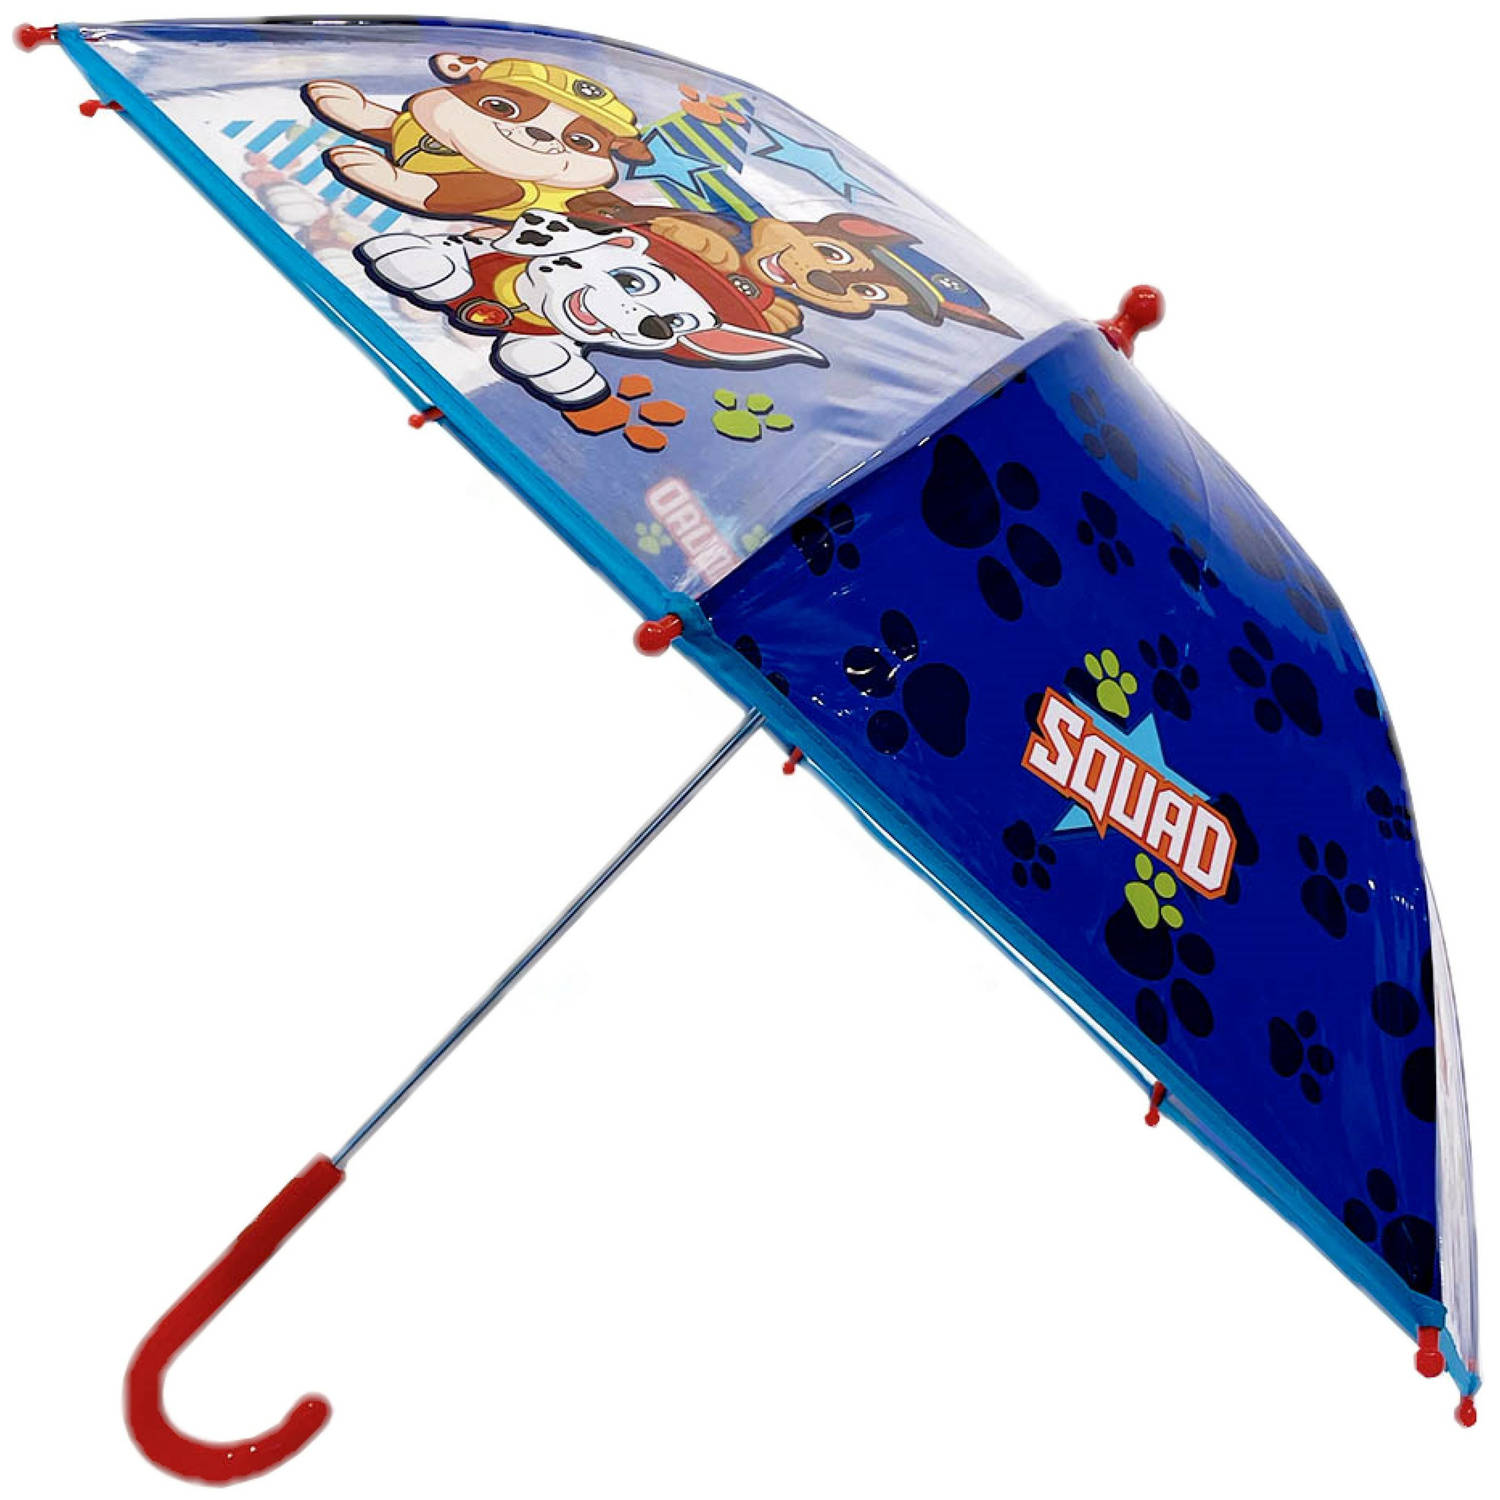 PAW Patrol - Paraplu - Kinderen - 78cm - Blauw/Wit